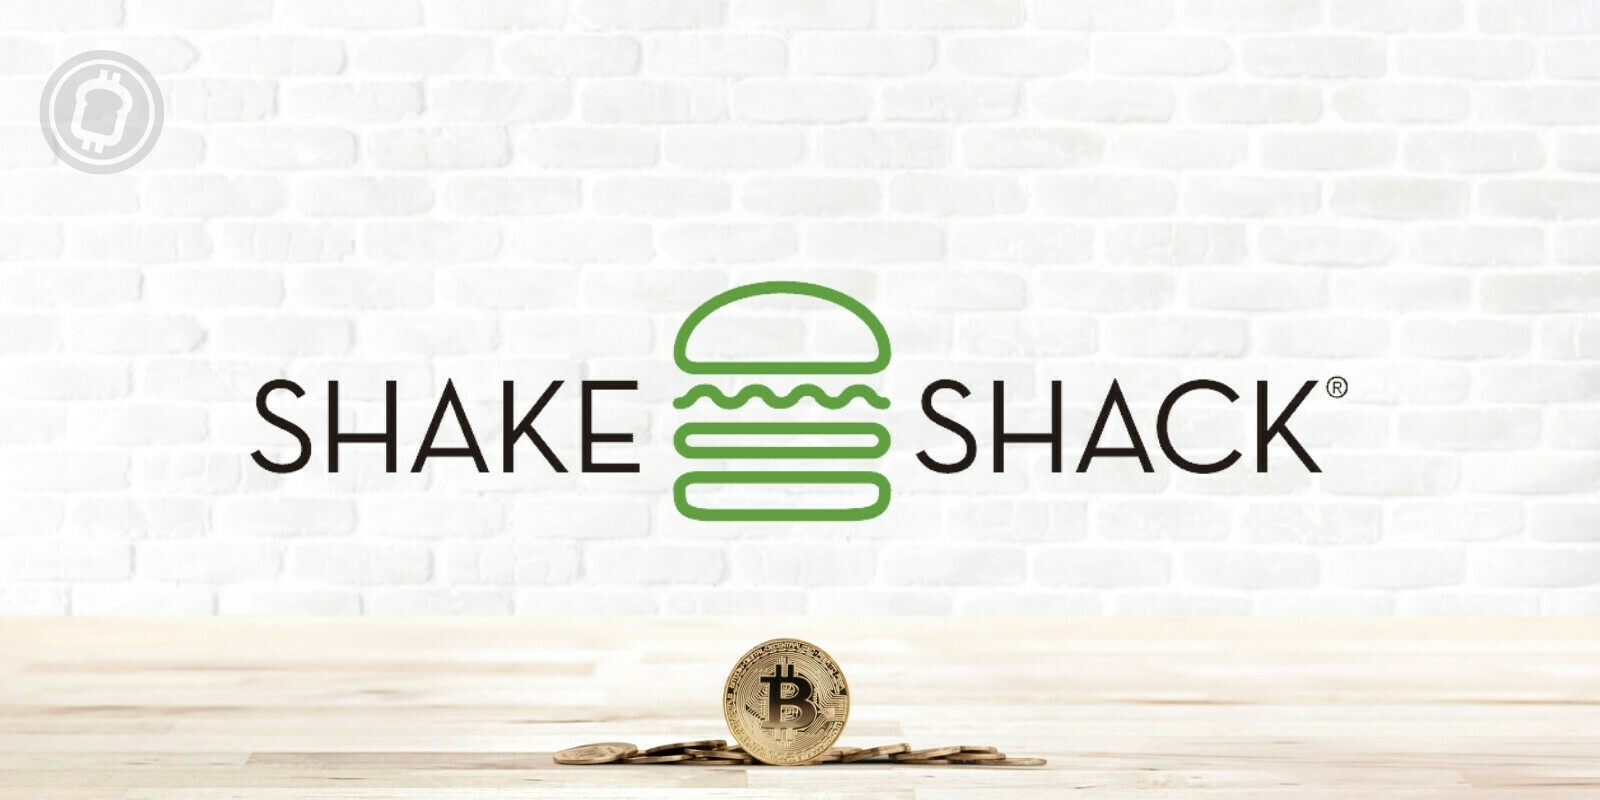 La chaîne de fast-food Shake Shack va offrir du Bitcoin (BTC) à ses clients